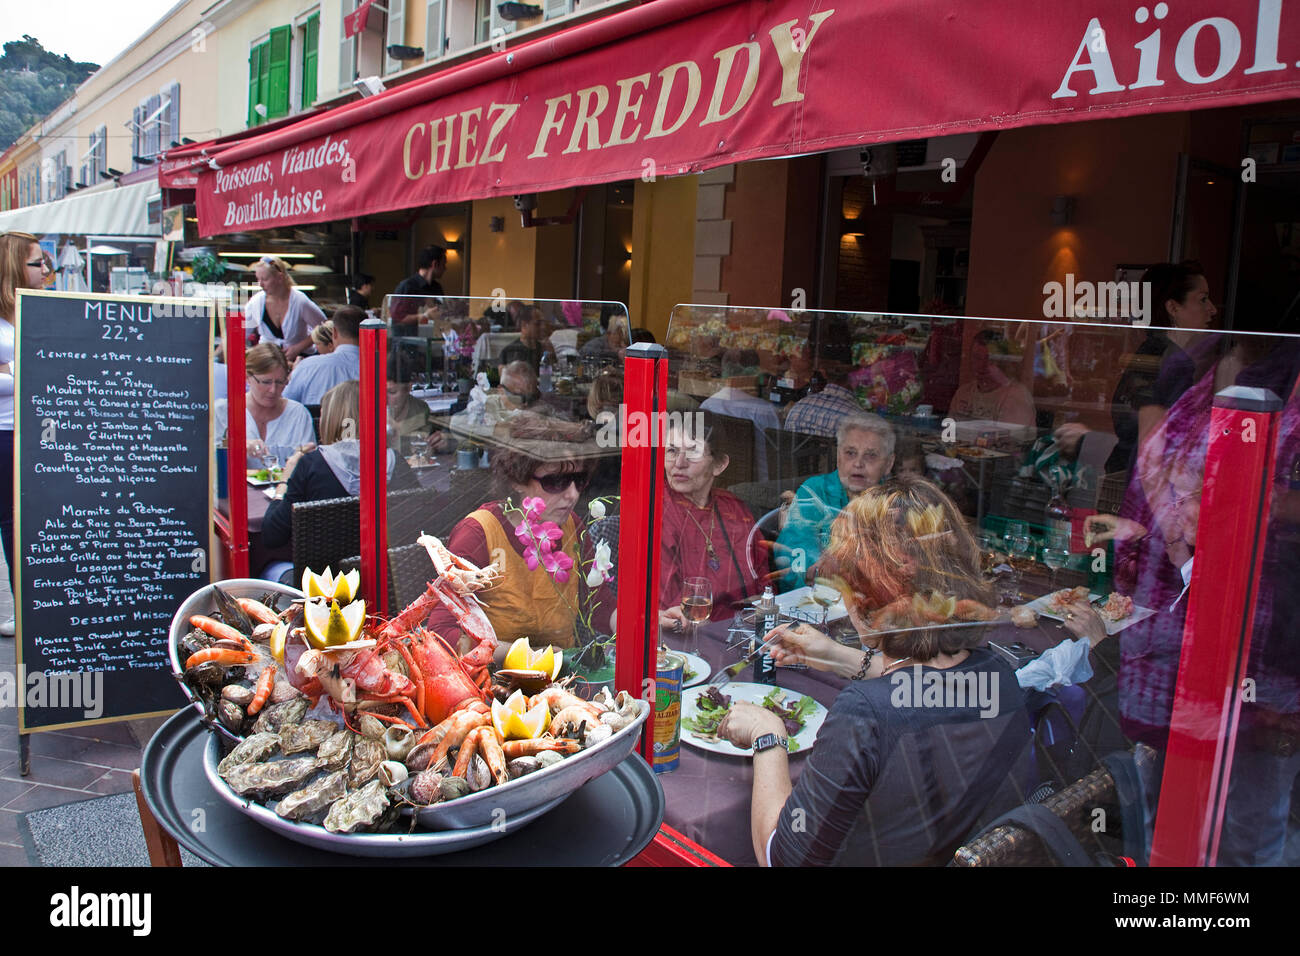 Street restaurant "Chez Freddy" au lieu Cours Saleya, Nice, Côte d'Azur, Alpes-Maritimes, France du Sud, France, Europe Banque D'Images